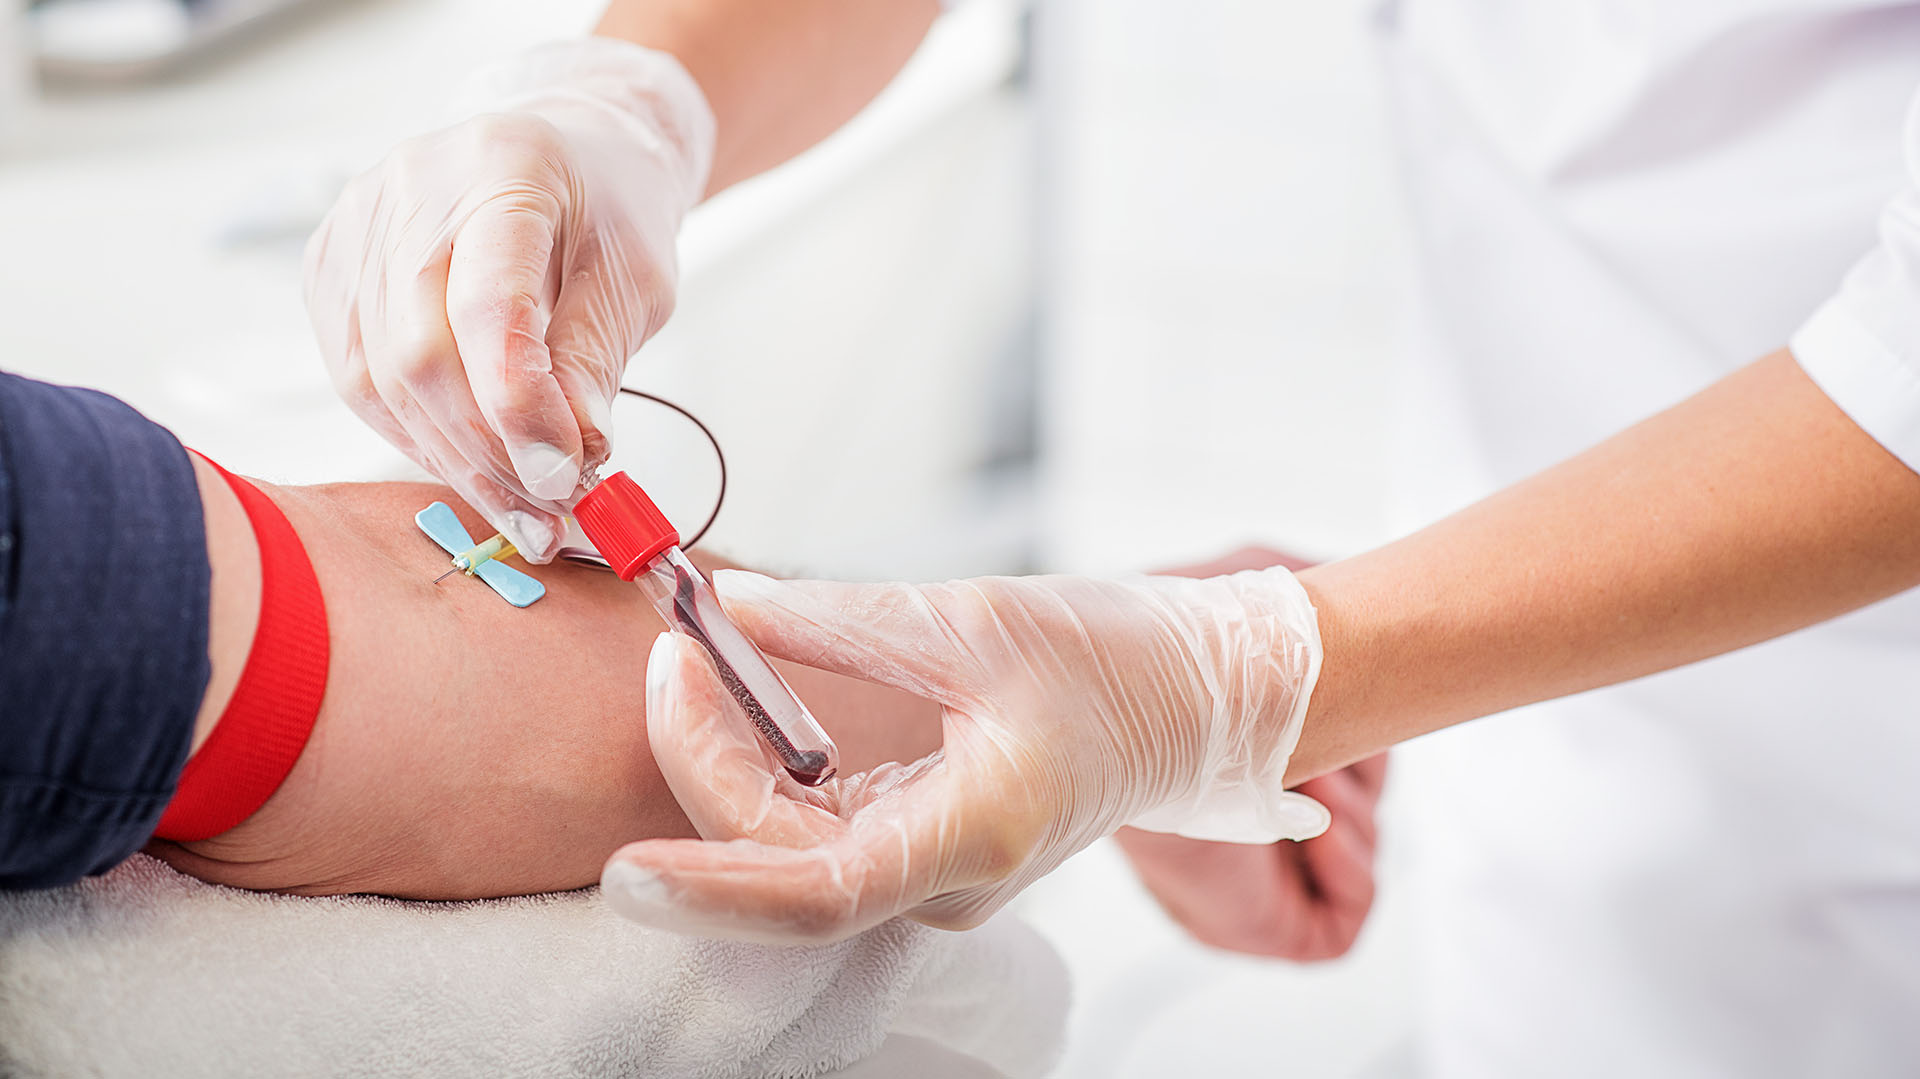 La FDA planteó flexibilizar las reglas de donación de sangre para hombres homosexuales y bisexuales